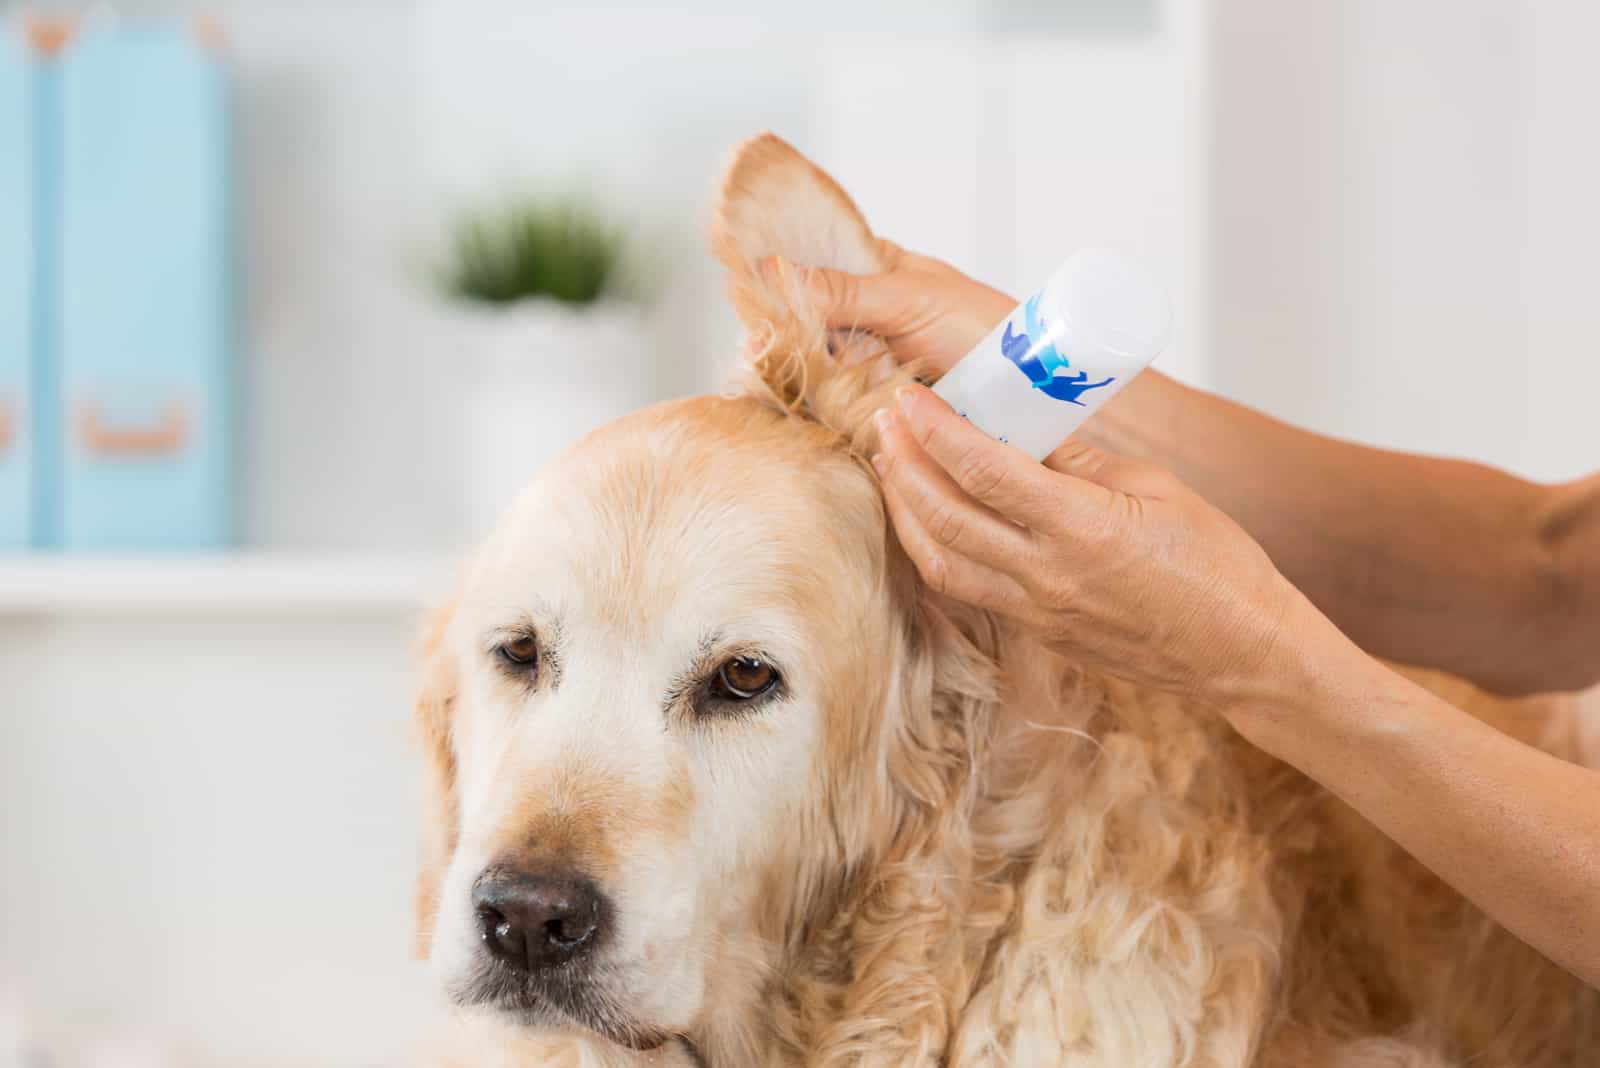 Tierarzt, der Reinigung durchführt, einen Hund Golden Retriever hörend